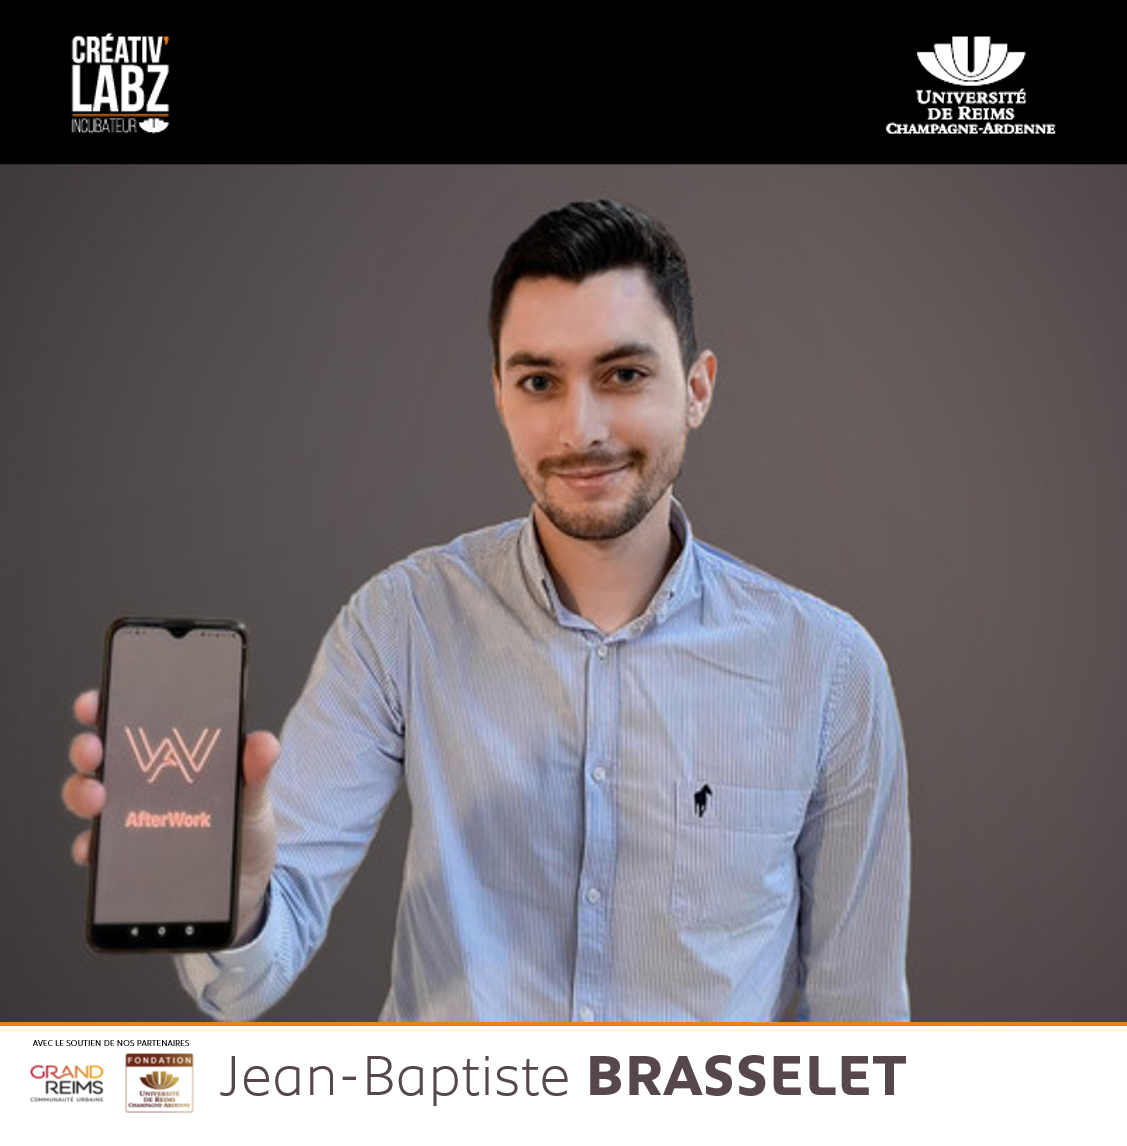 Jean-Baptiste BRASSELET